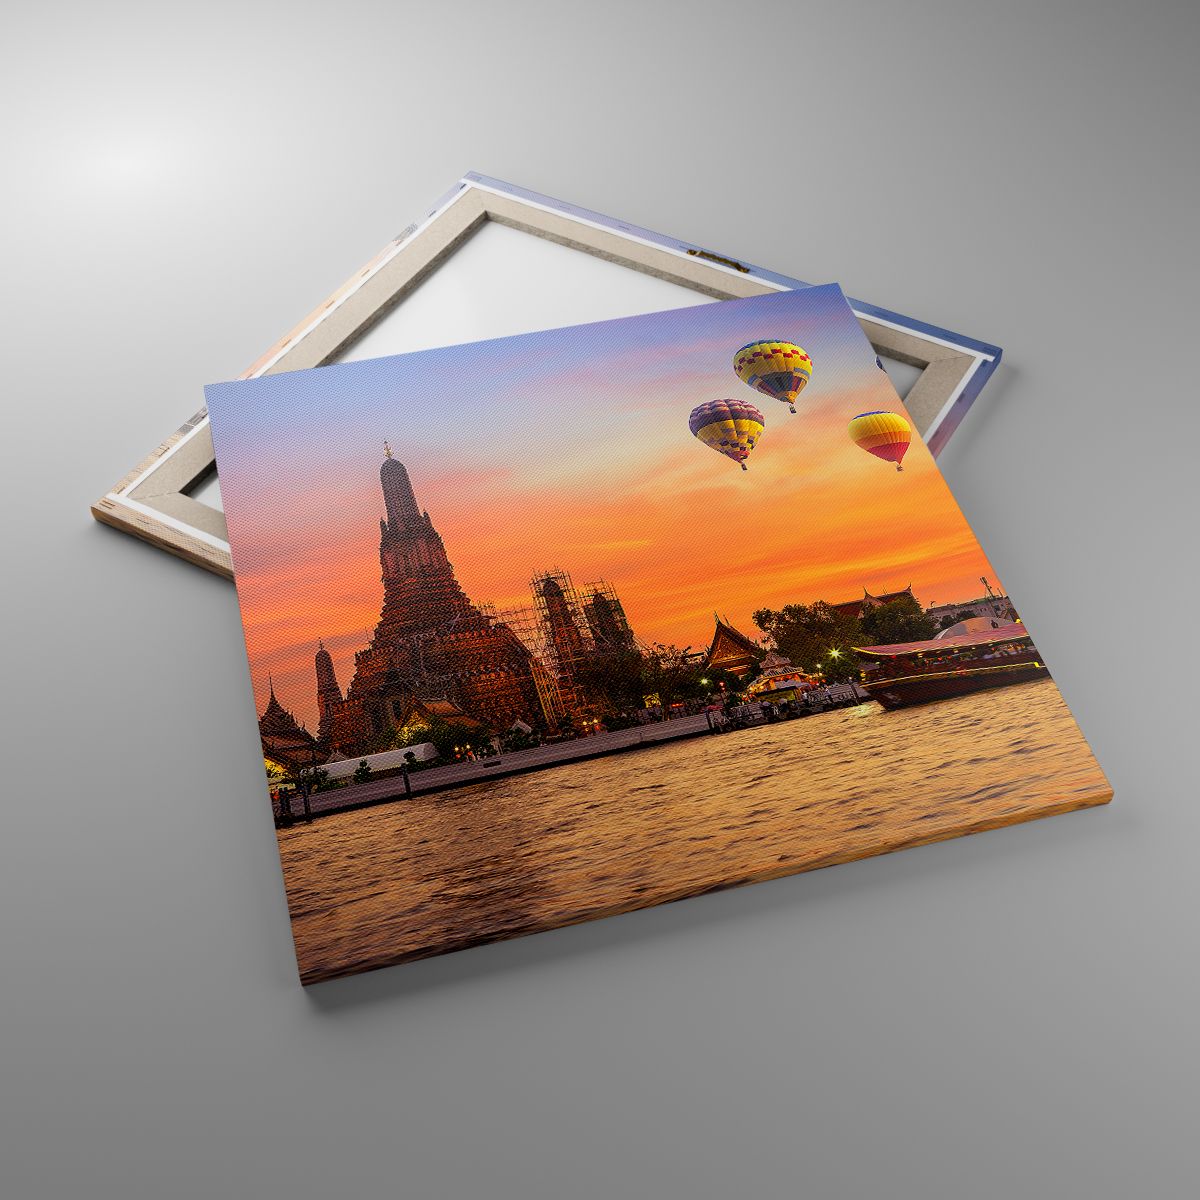 Obrazy Bangkok, Obrazy Świątynia Świtu, Obrazy Tajlandia, Obrazy Balony, Obrazy Azja